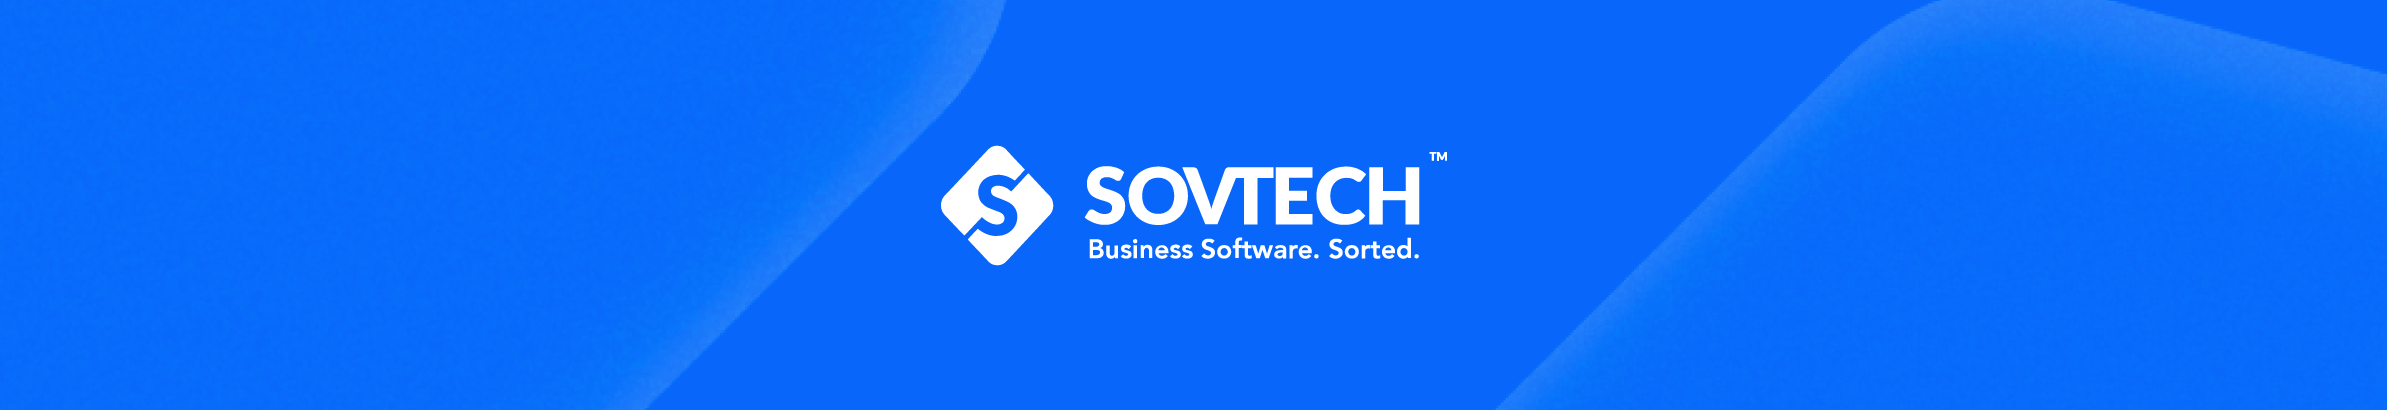 SovTech UK's profile banner